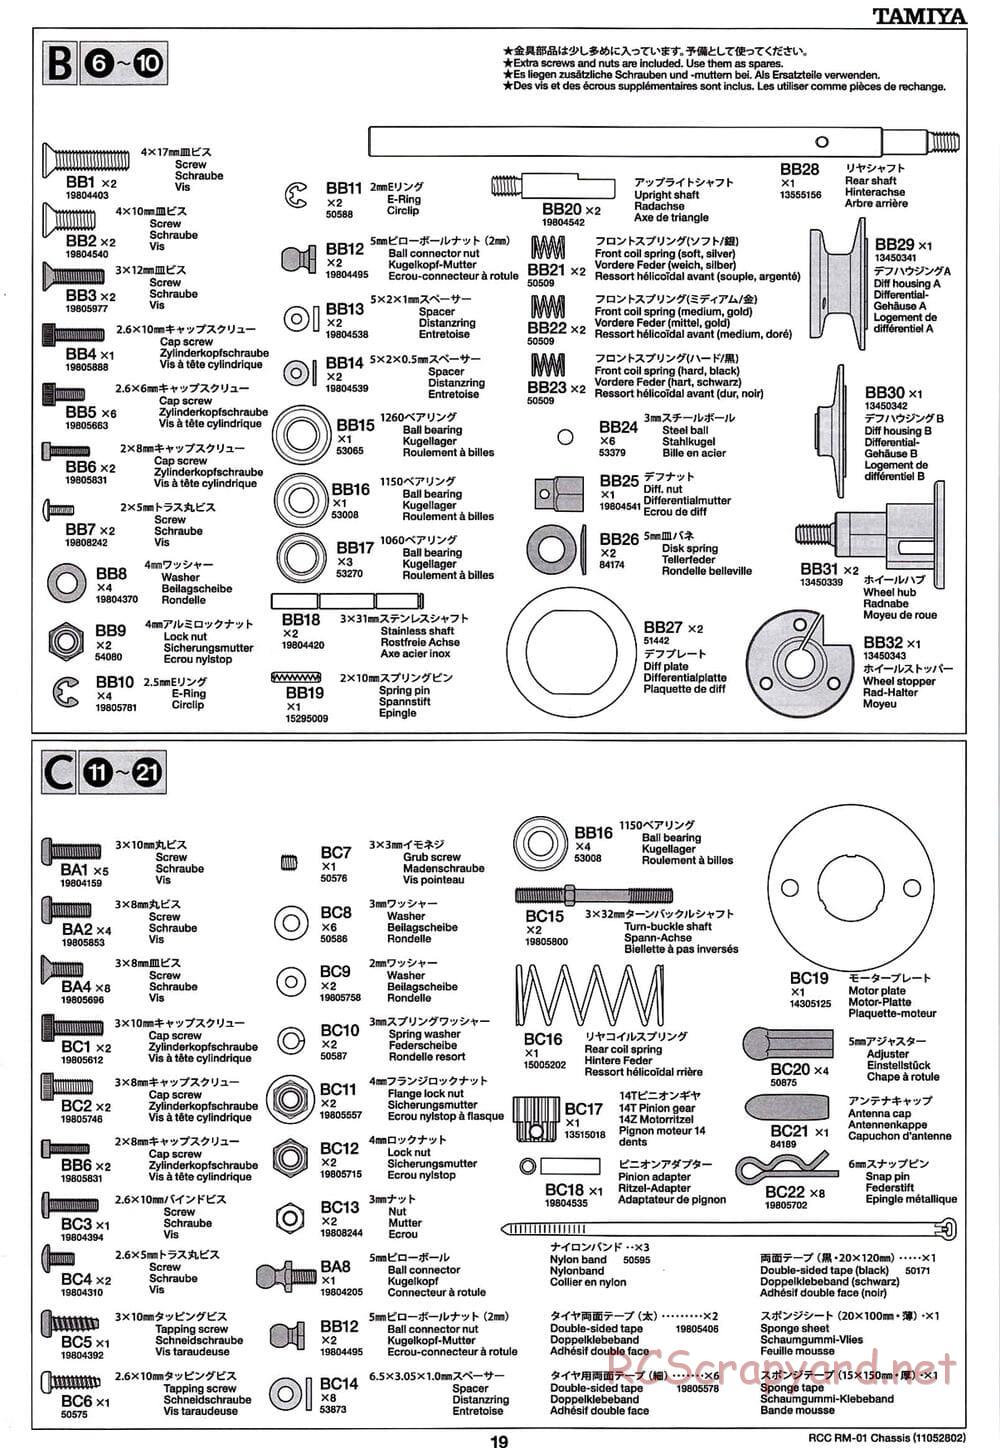 Tamiya - TA04-SS Chassis - Manual - Page 19